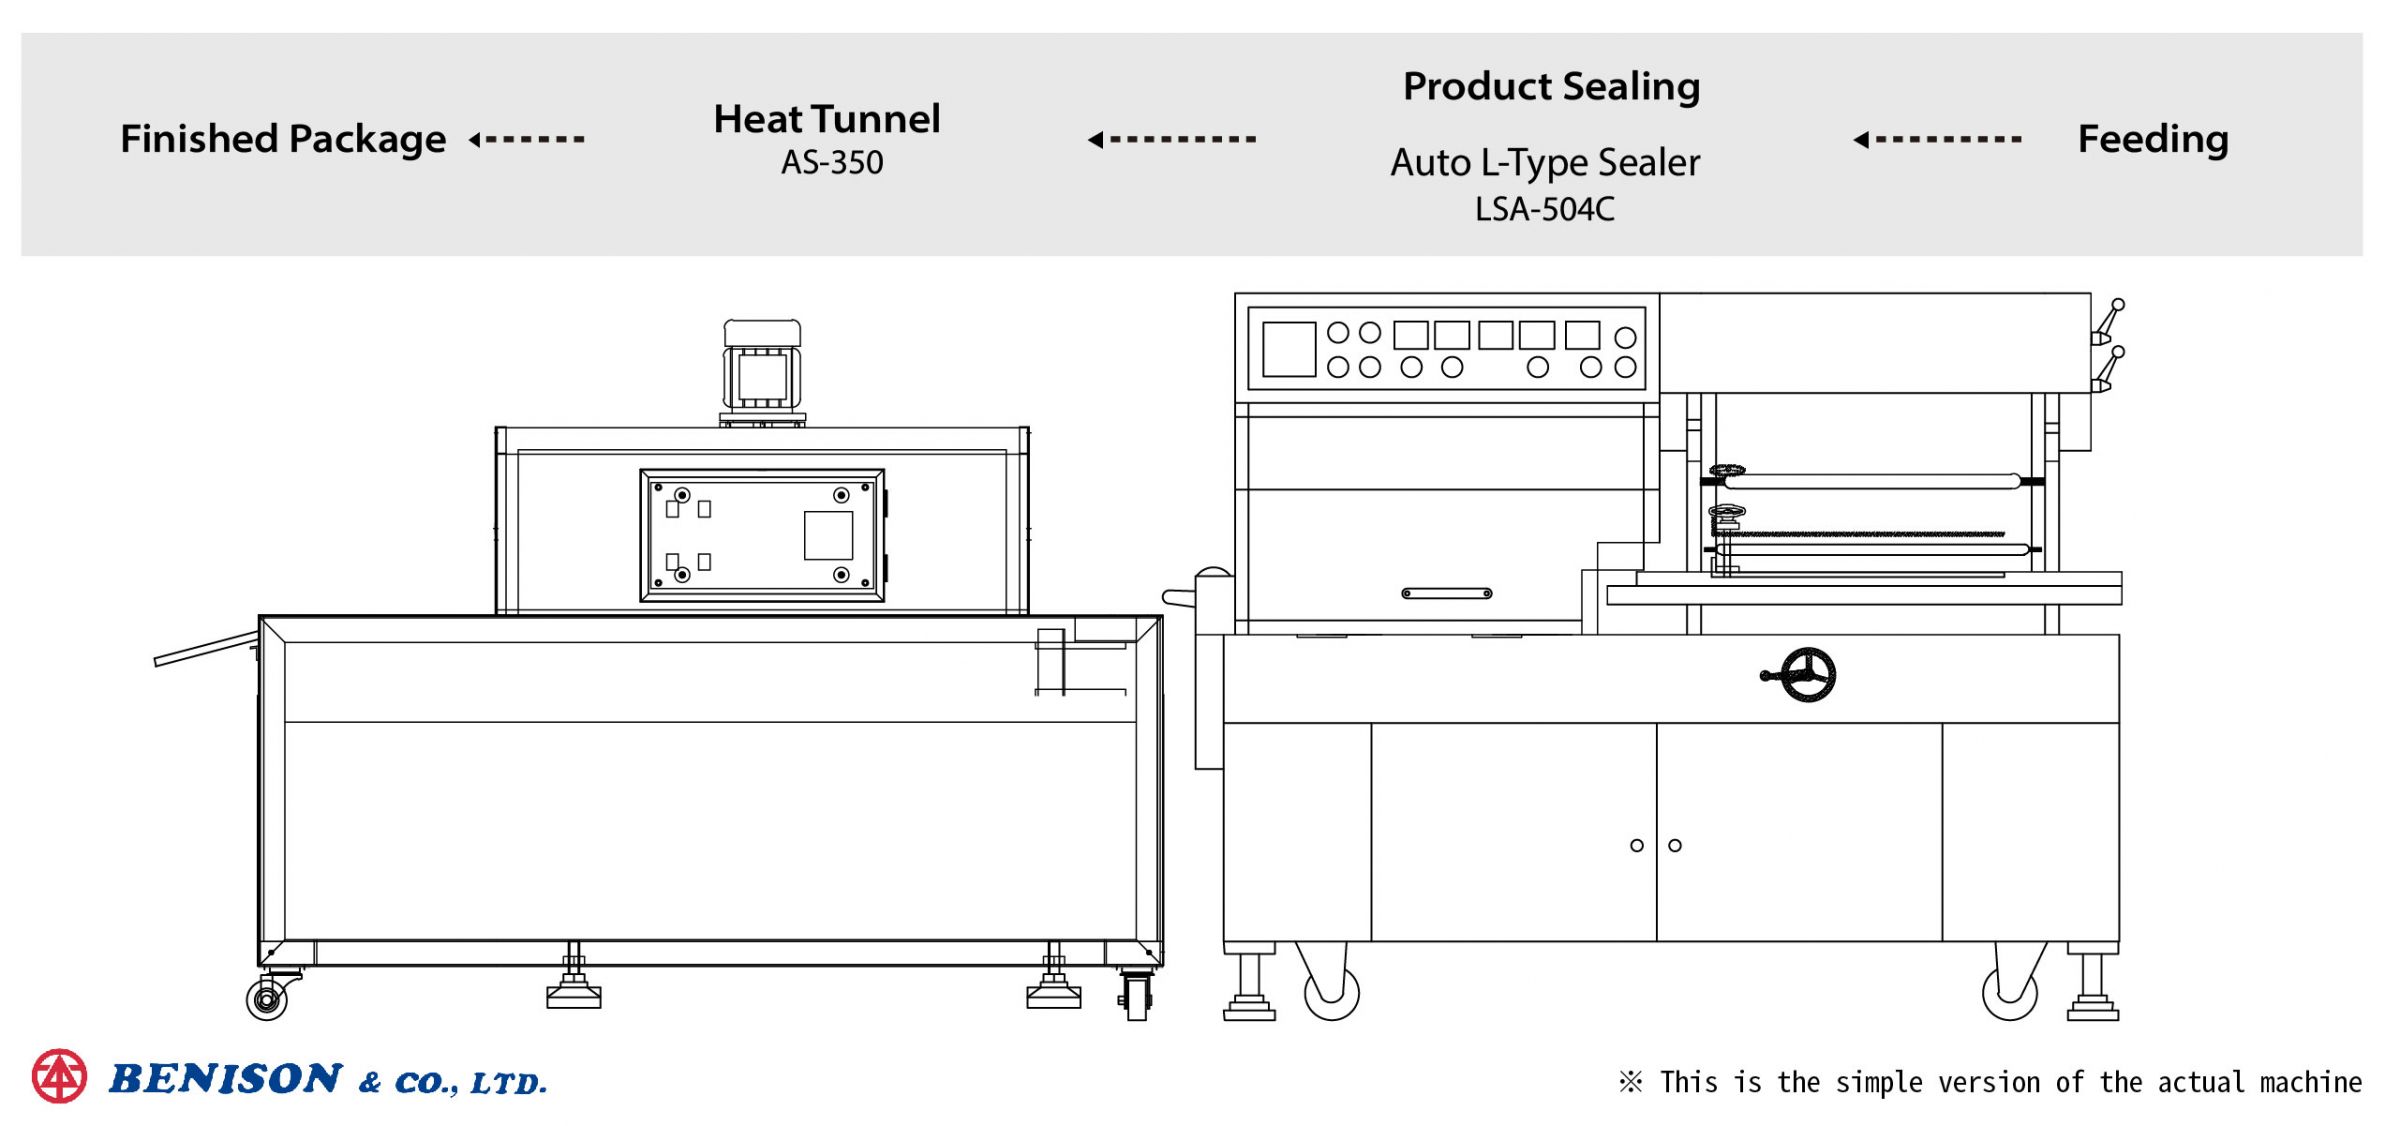 การวางแผนสายการผลิตในครัวเรือน LSA-504C+AS-350